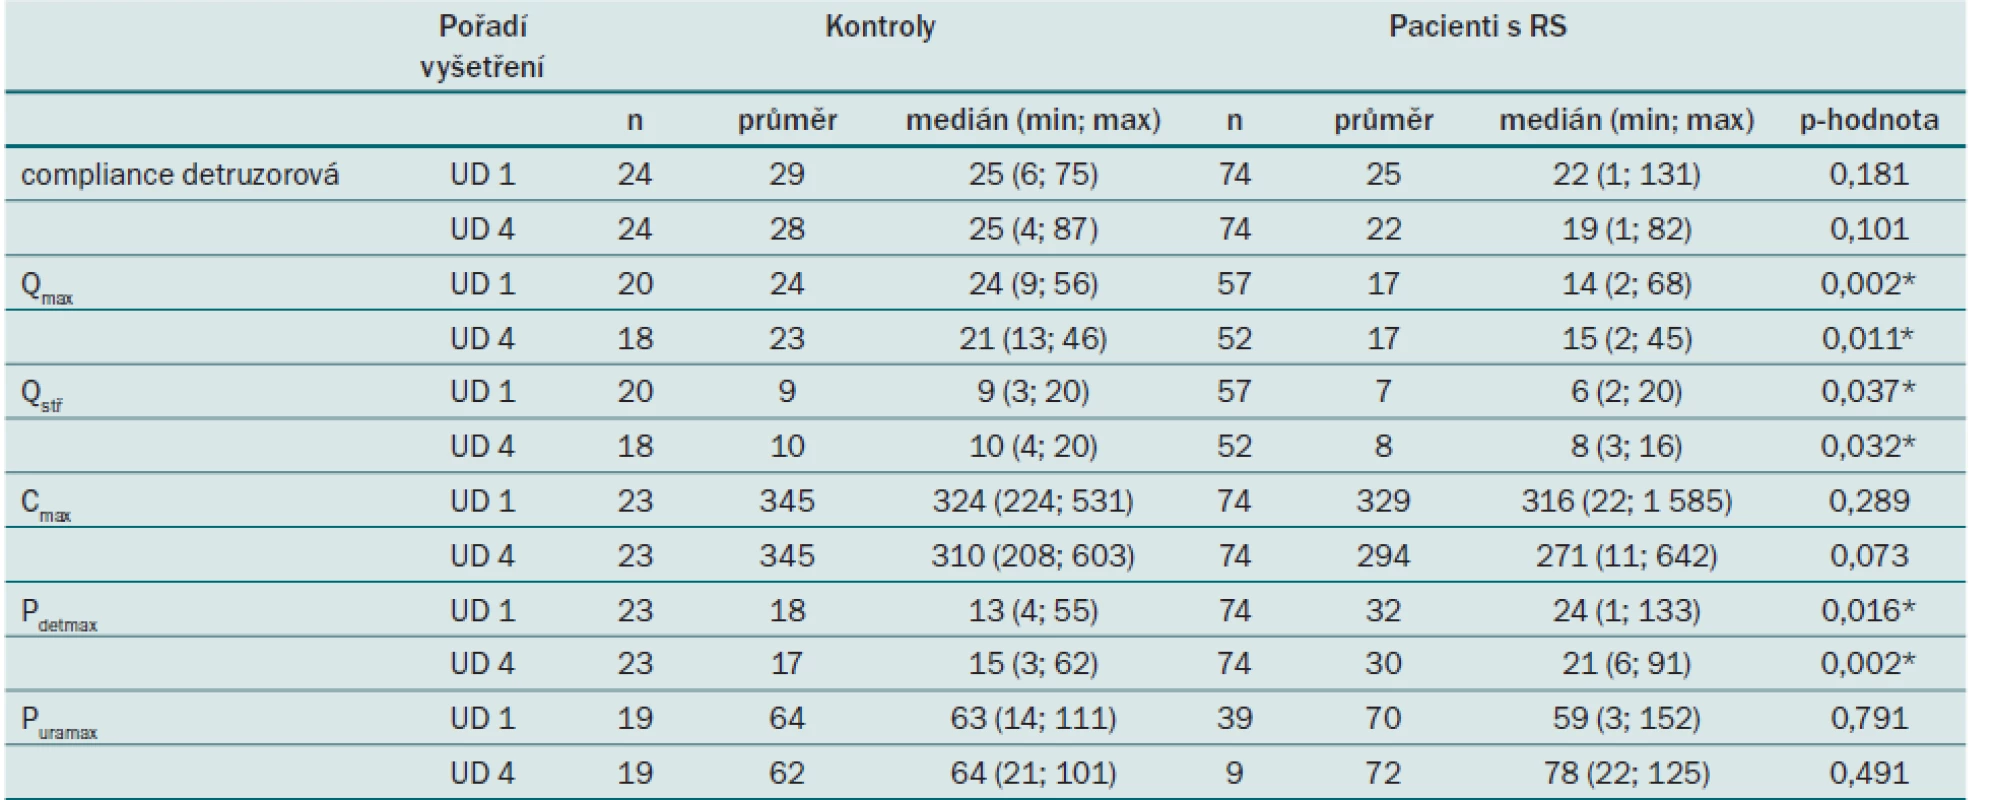 Srovnání spojitých parametrů UD vyšetření v 0. a 12. měsíci (UD 1 a 4) mezi pacienty a kontrolními subjekty. Popis jednotlivých parametrů je uvedený v tab. 4.